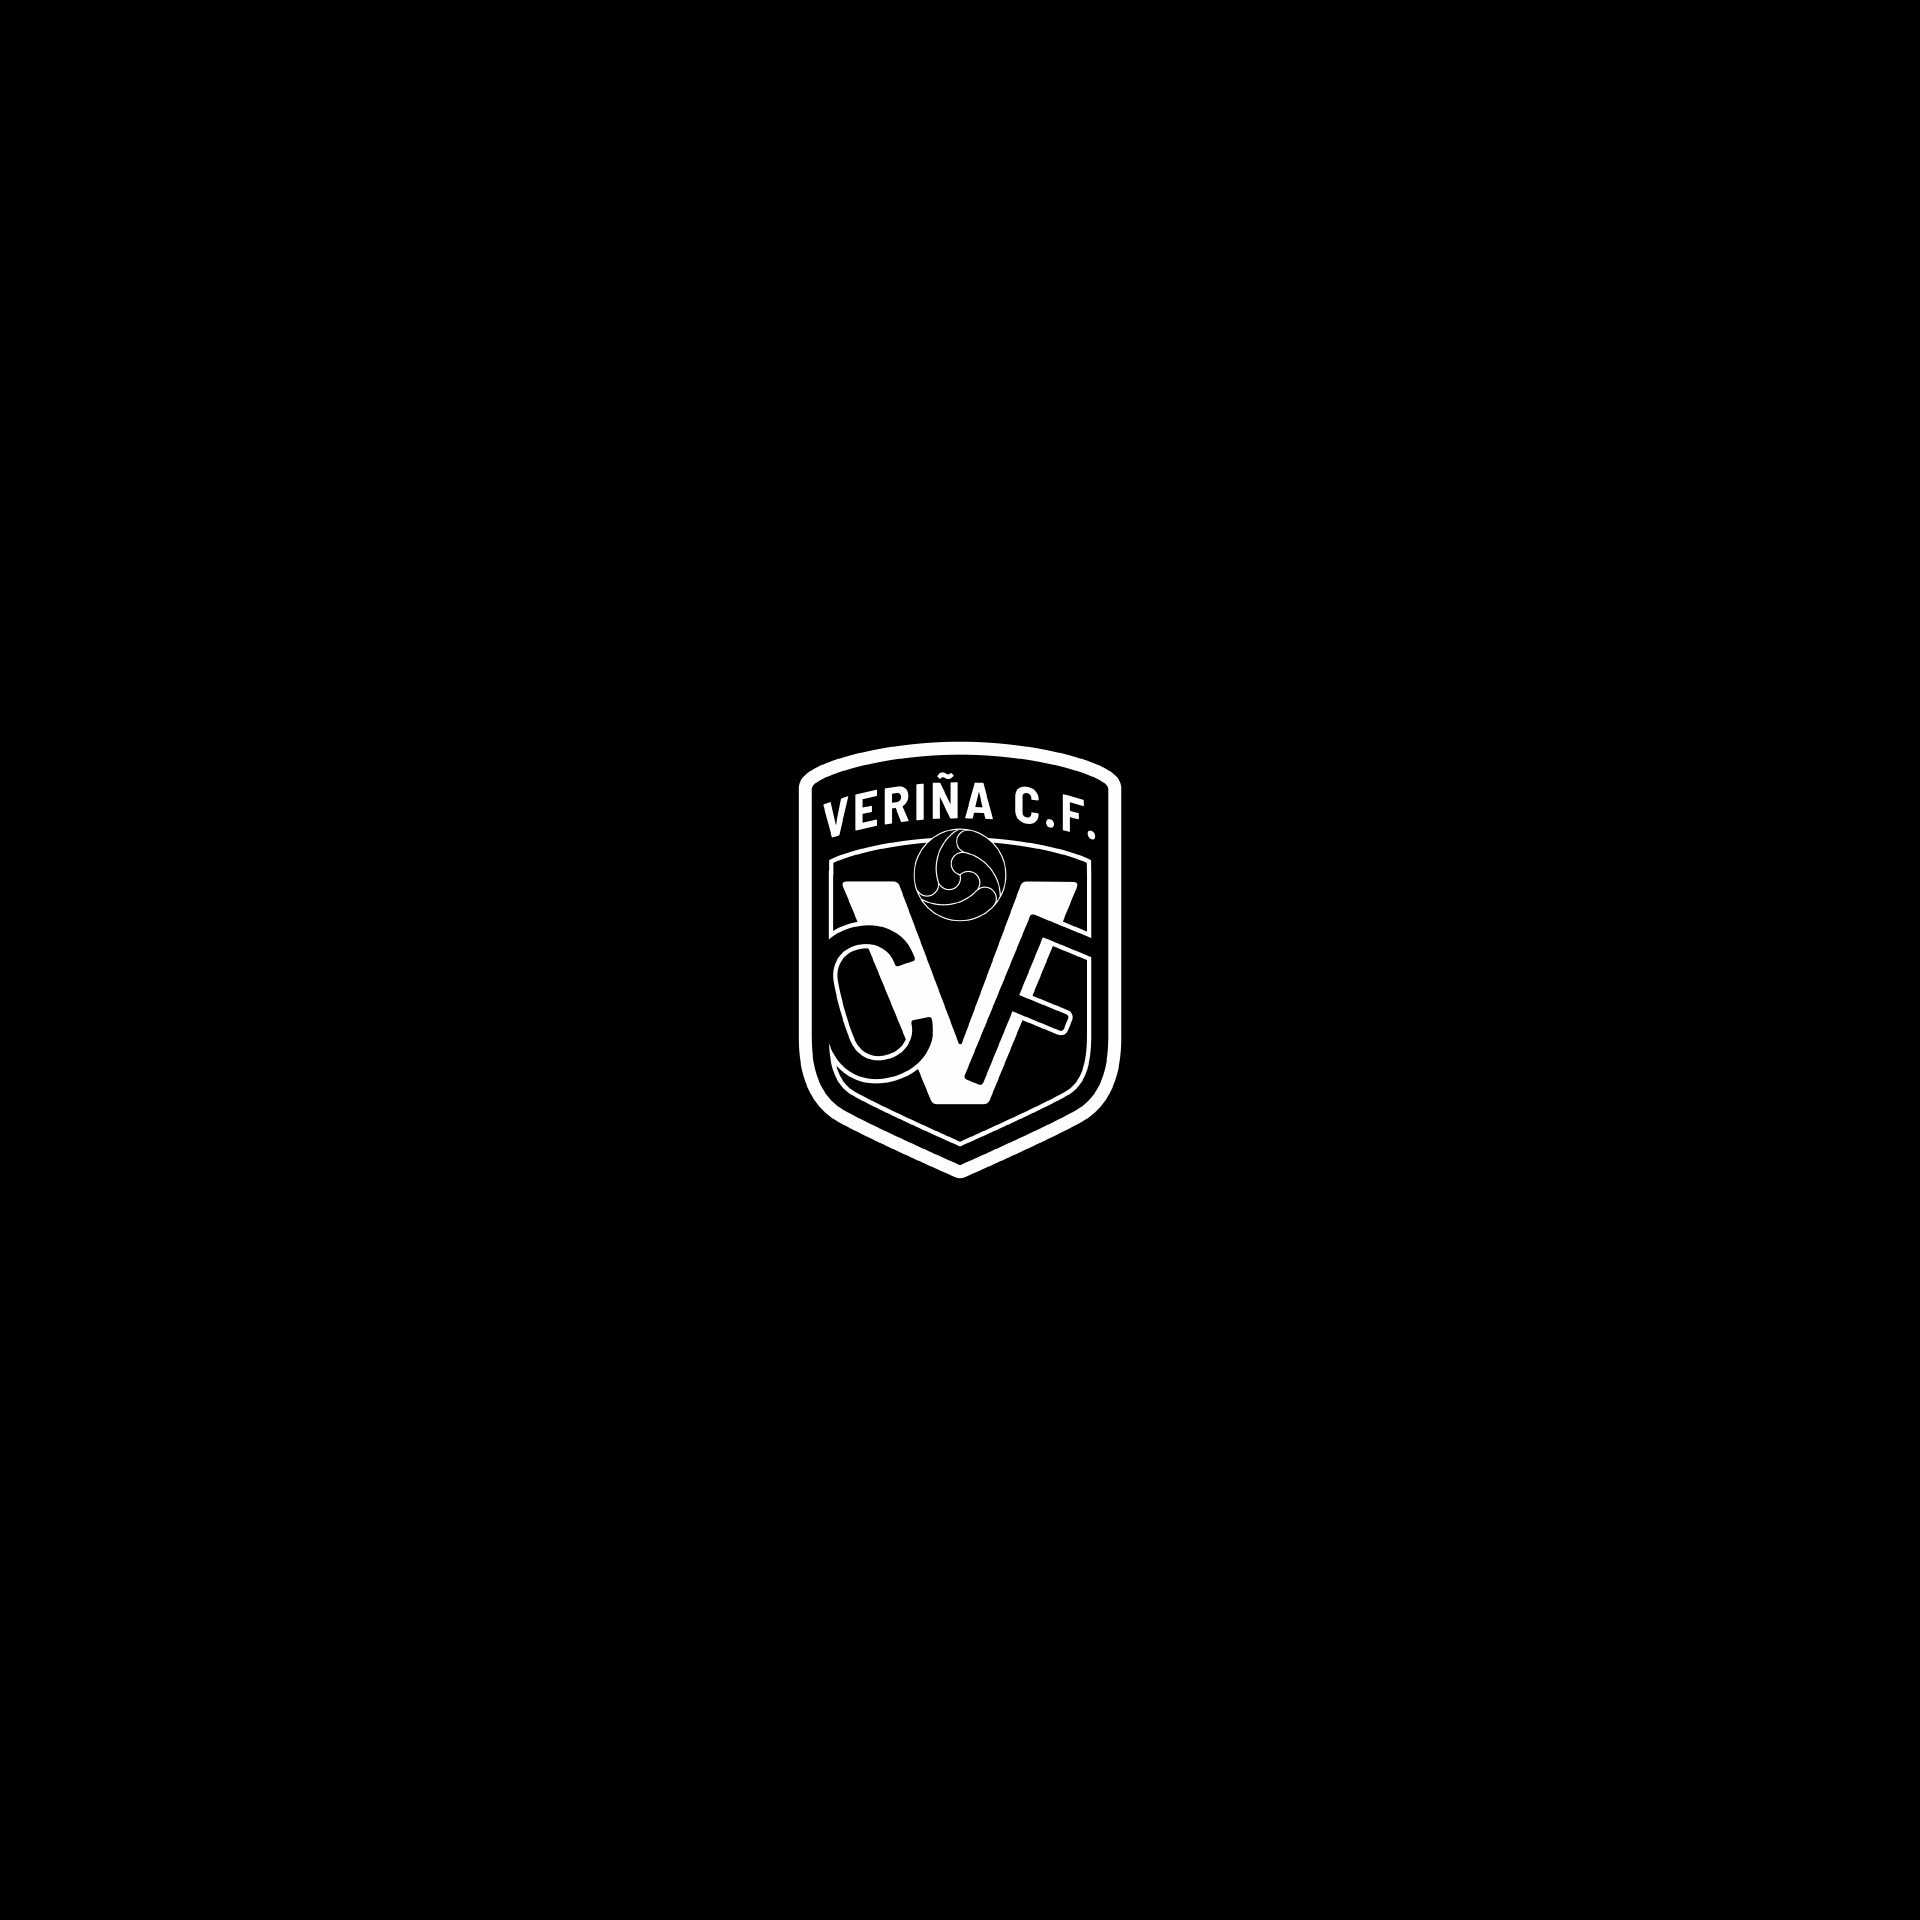 VCF_void